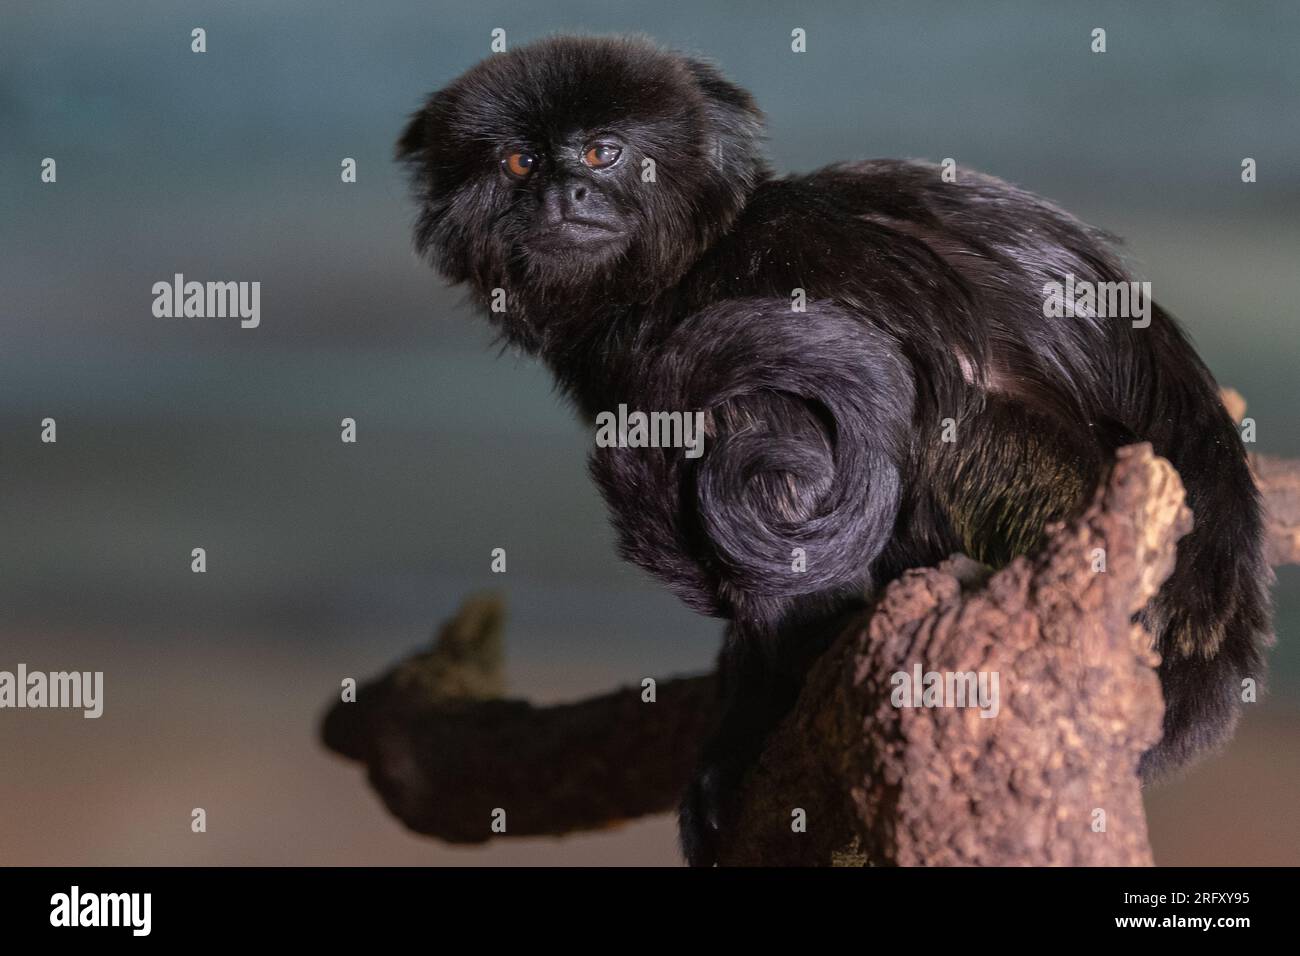 A Goeldi's marmoset or Goeldi's monkey (Callimico goeldii) Stock Photo